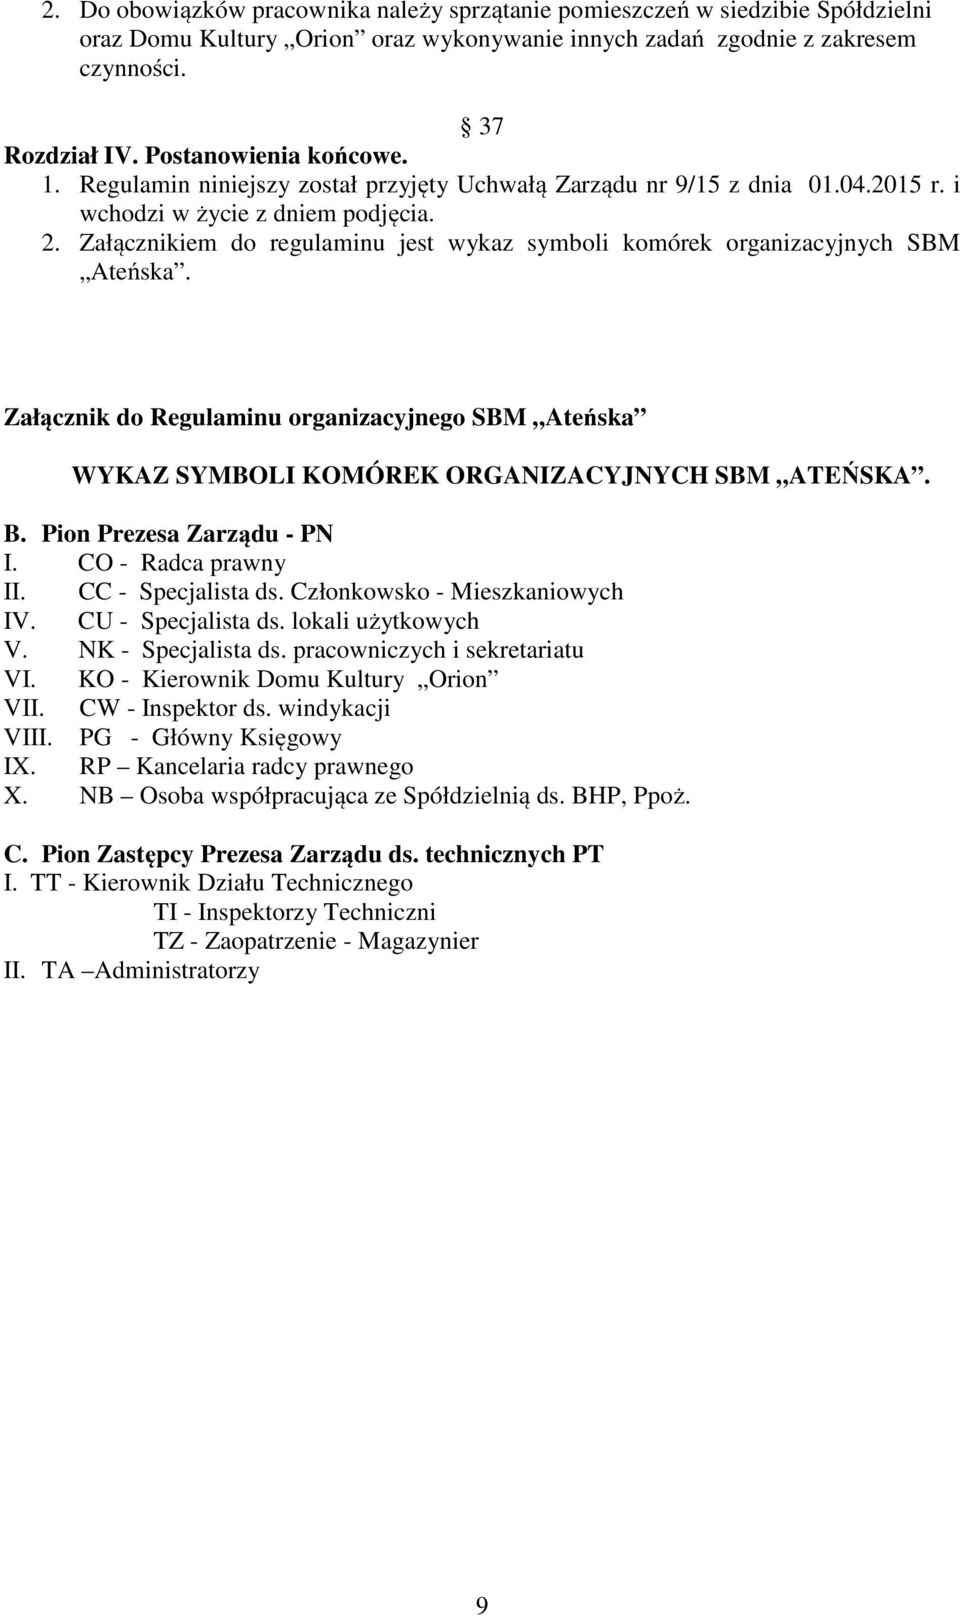 Załącznikiem do regulaminu jest wykaz symboli komórek organizacyjnych SBM Ateńska. Załącznik do Regulaminu organizacyjnego SBM Ateńska WYKAZ SYMBOLI KOMÓREK ORGANIZACYJNYCH SBM ATEŃSKA. B.